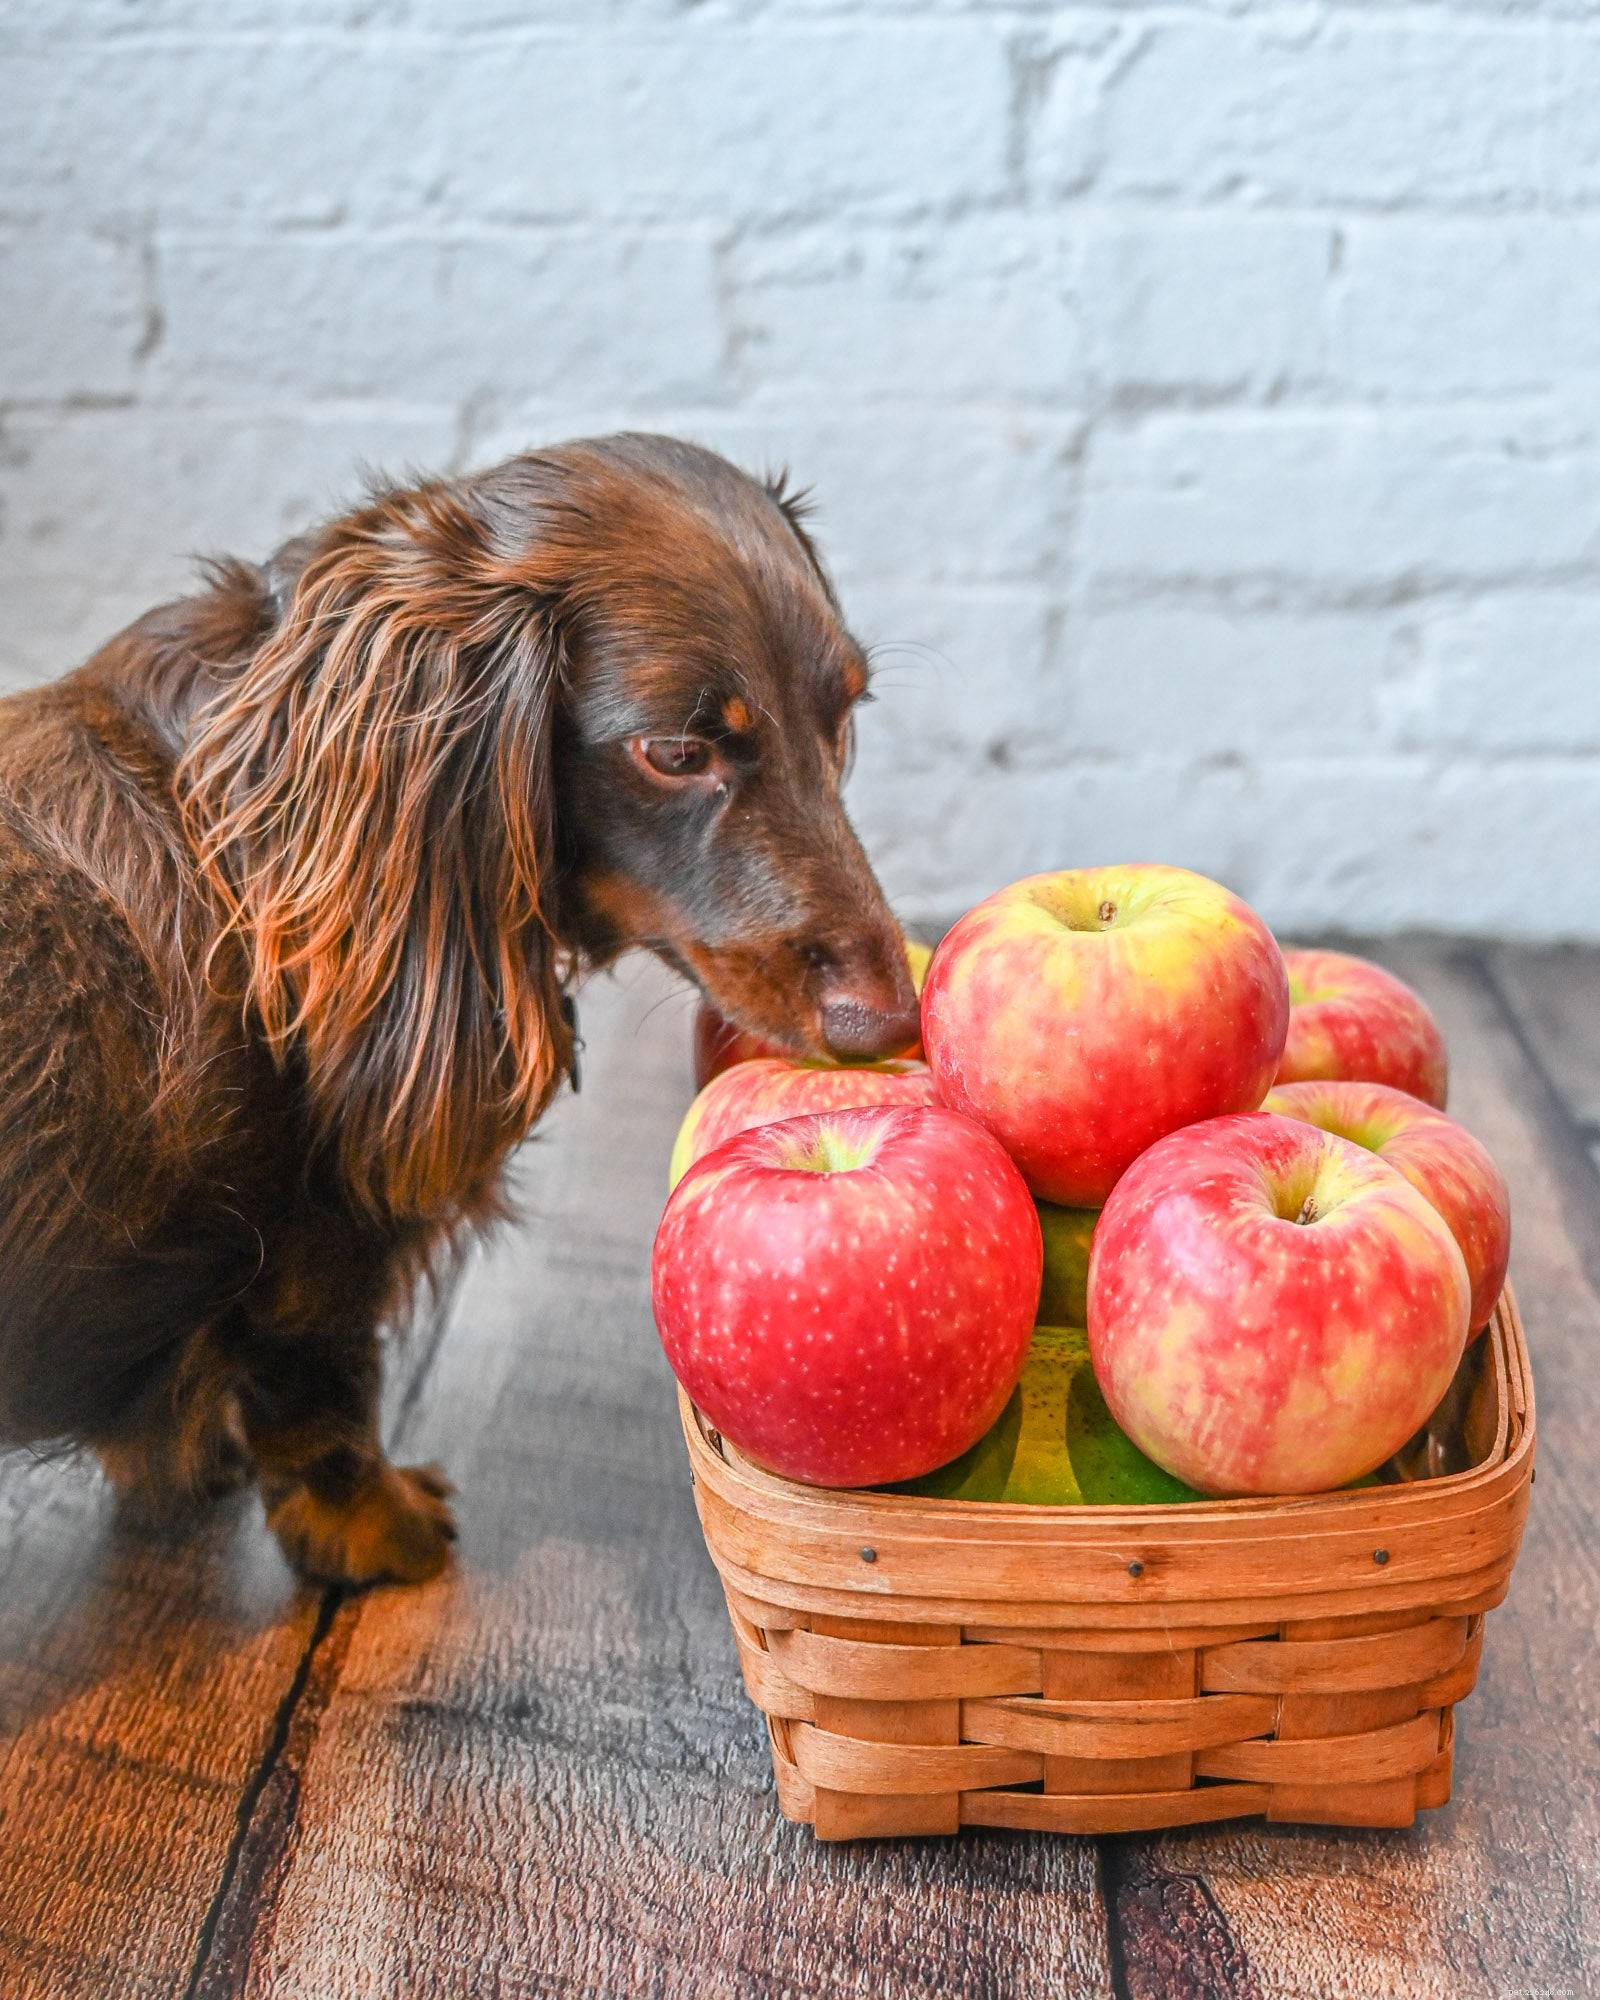 우리 강아지가 사과를 먹을 수 있습니까?